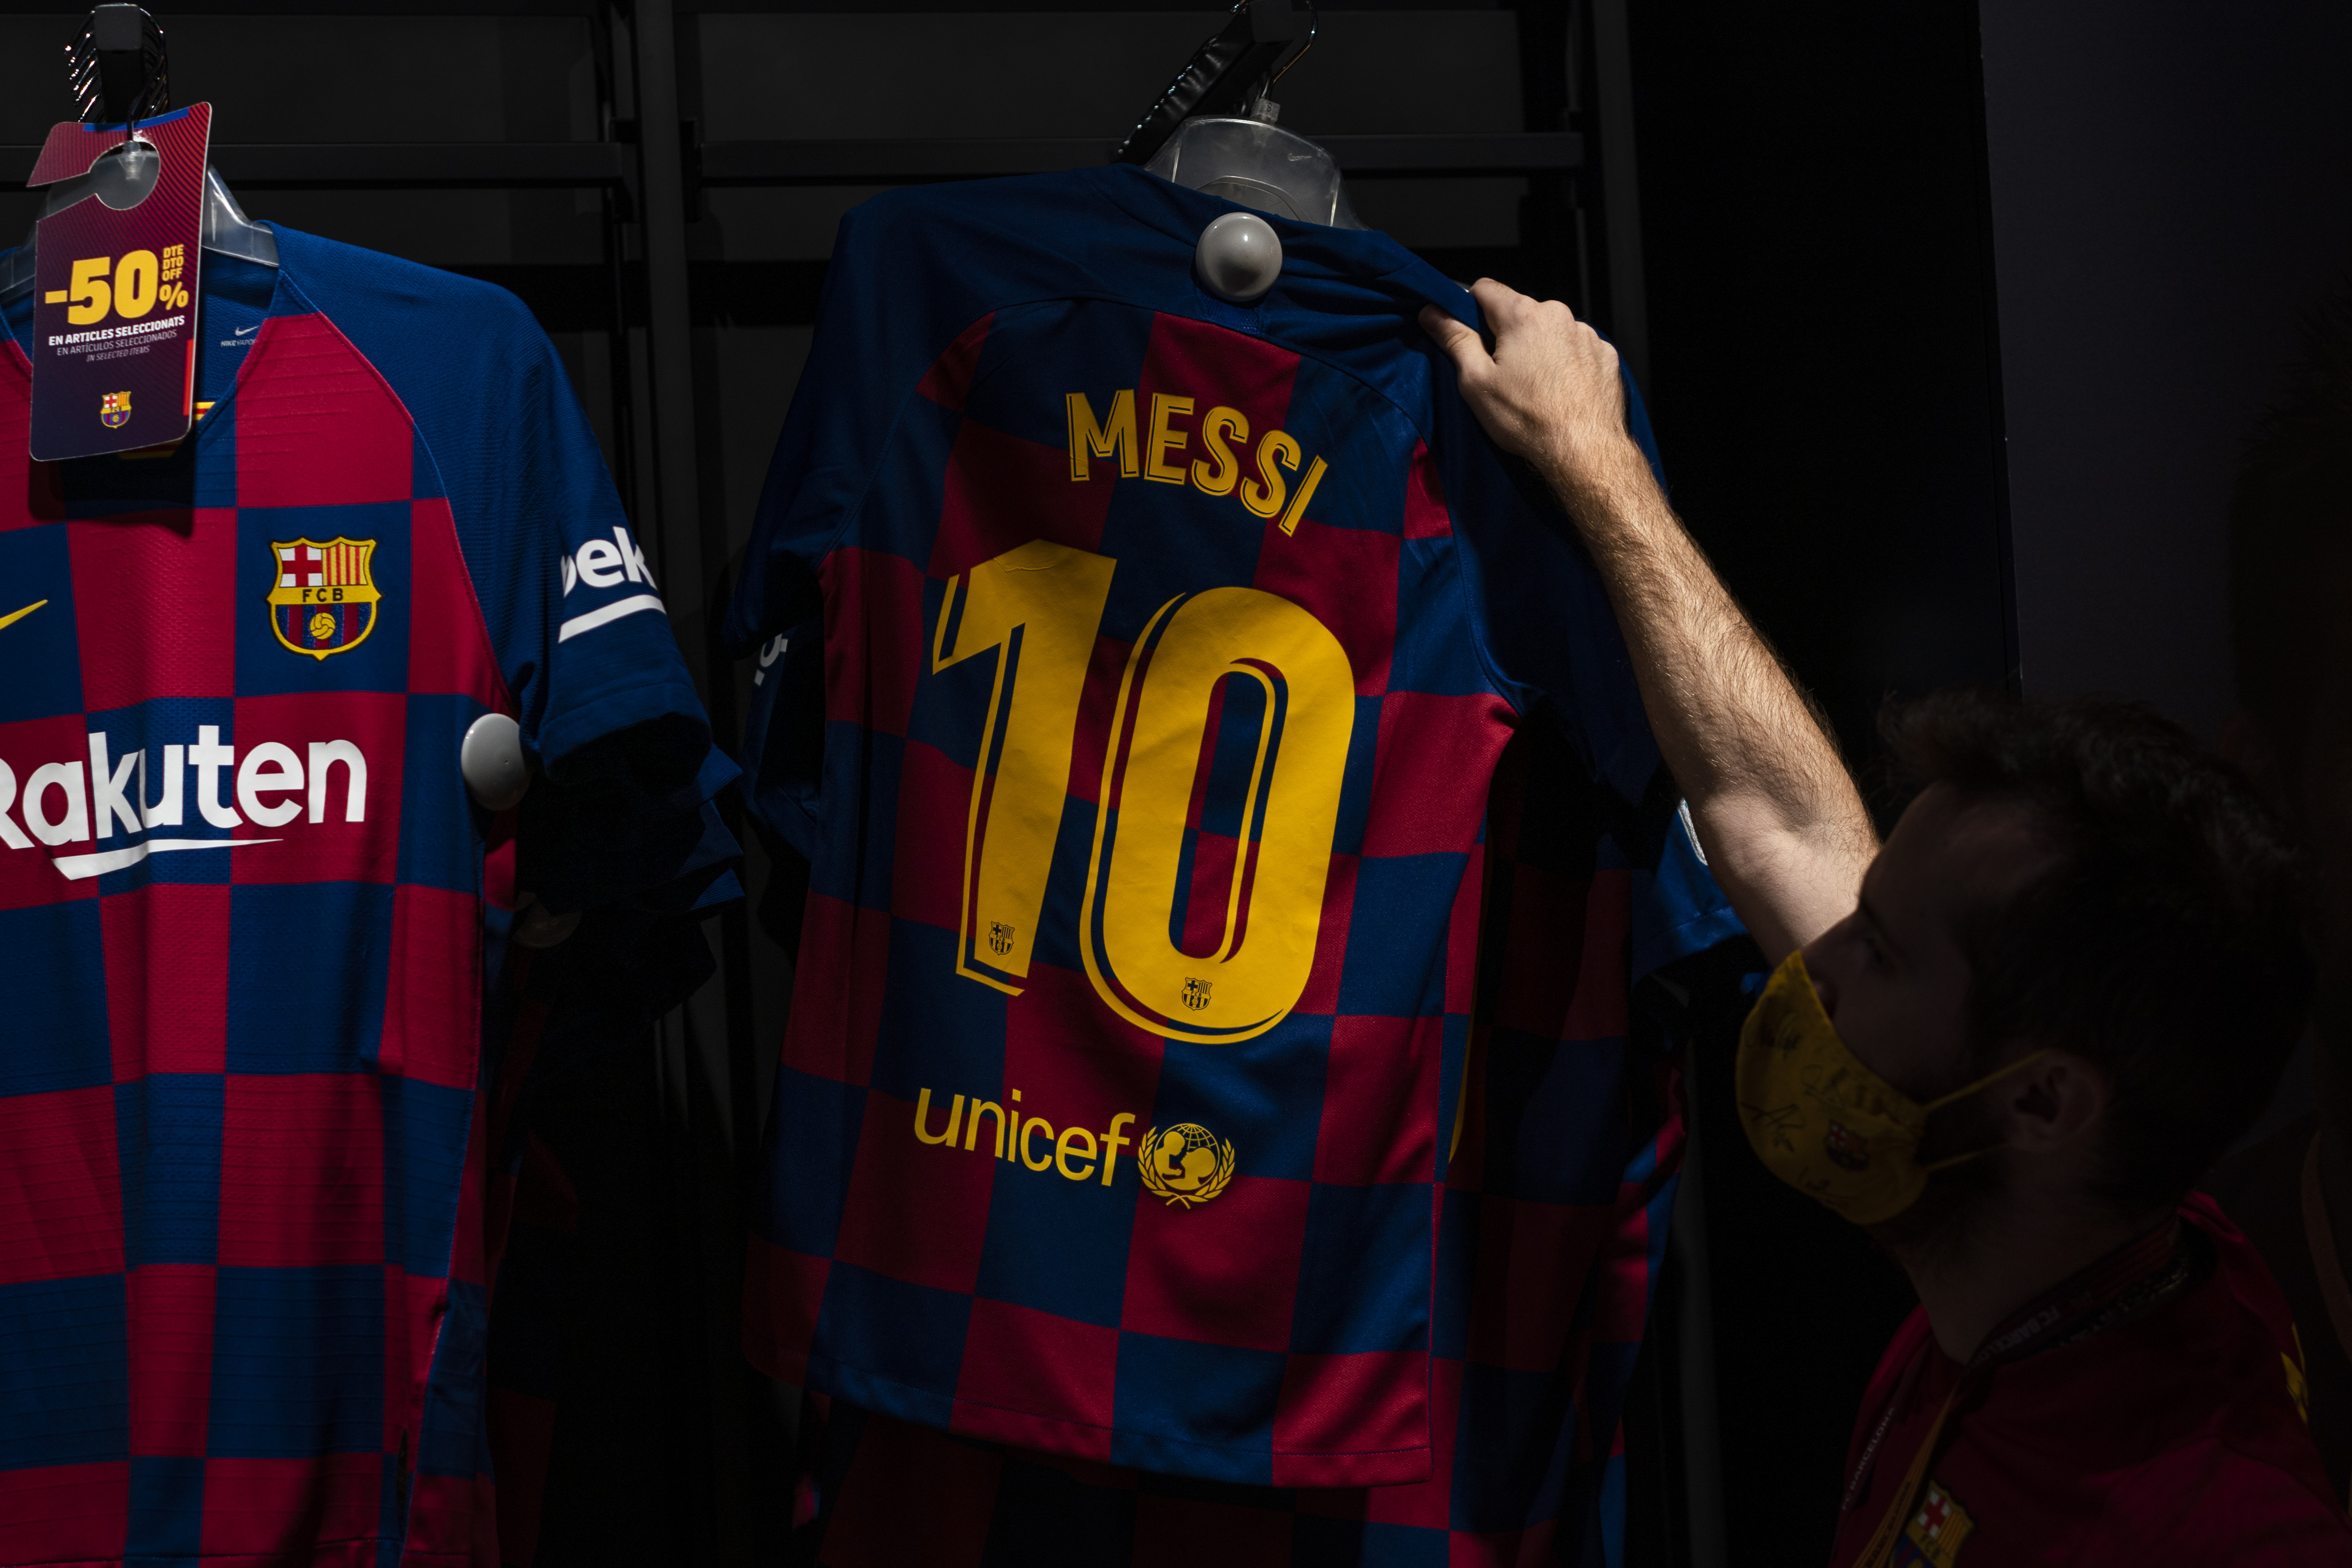 Messi no se fue y la '10' sigue en el perchero... por suerte para el Barcelona. El club factura cerca de 45 millones de euros al año por las casacas azulgranas con el nombre del crack en el dorsal. (AP Photo/Emilio Morenatti)